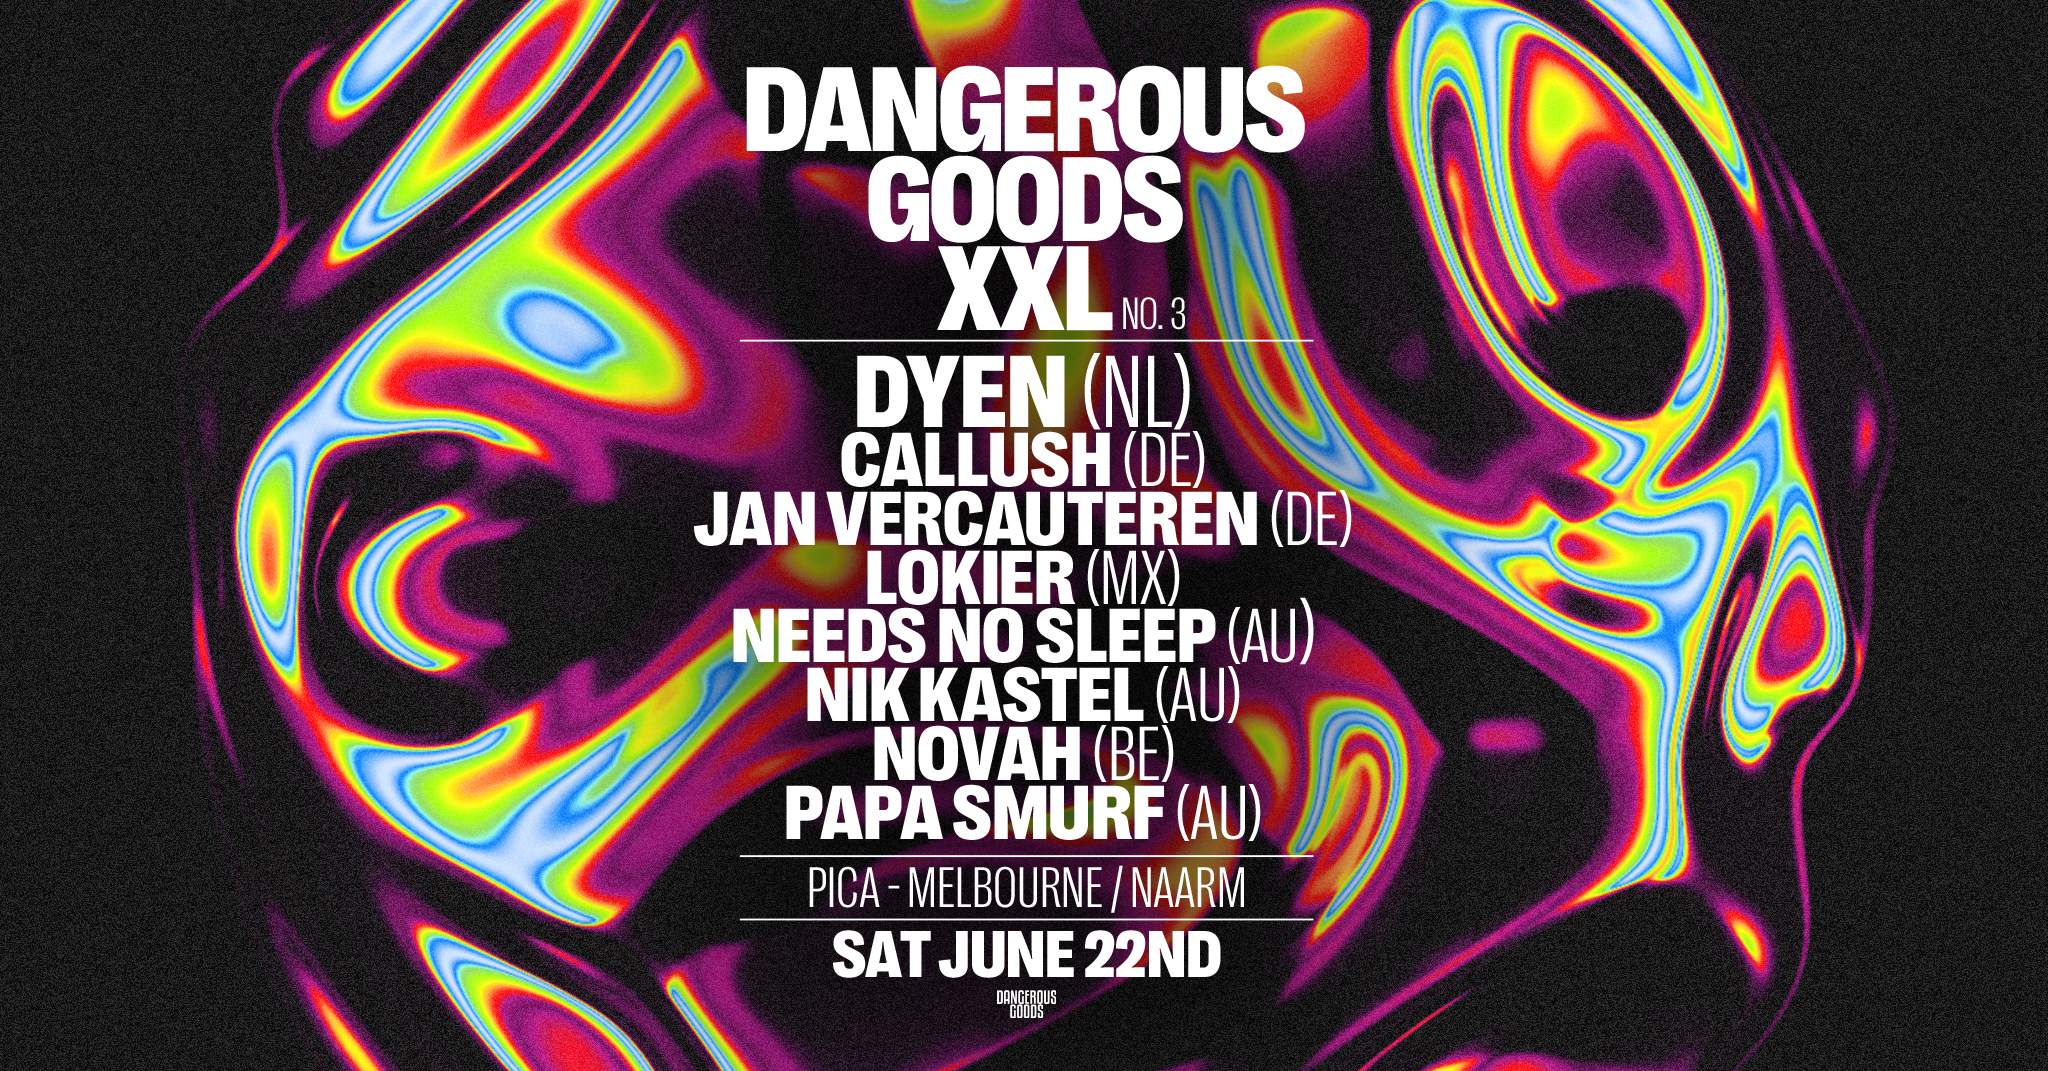 DANGEROUS GOODS XXL ft. DYEN (NL), CALLUSH (DE), Jan Vercauteren (DE), Lokier (MX), NOVAH (BE) - フライヤー表